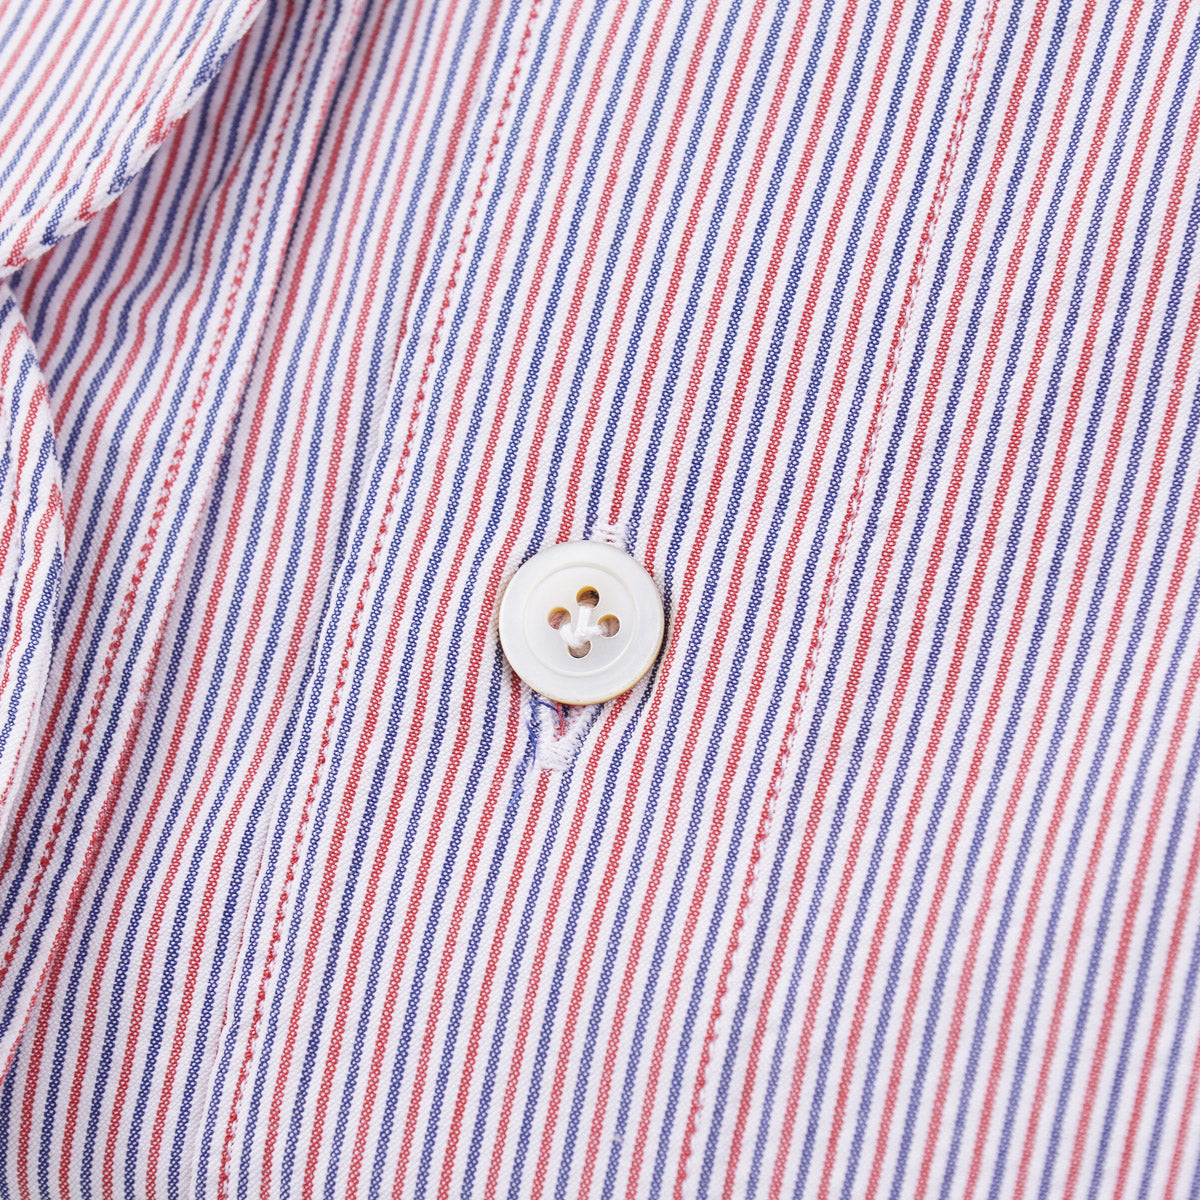 Finamore Woven Stripe Cotton Dress Shirt - Top Shelf Apparel